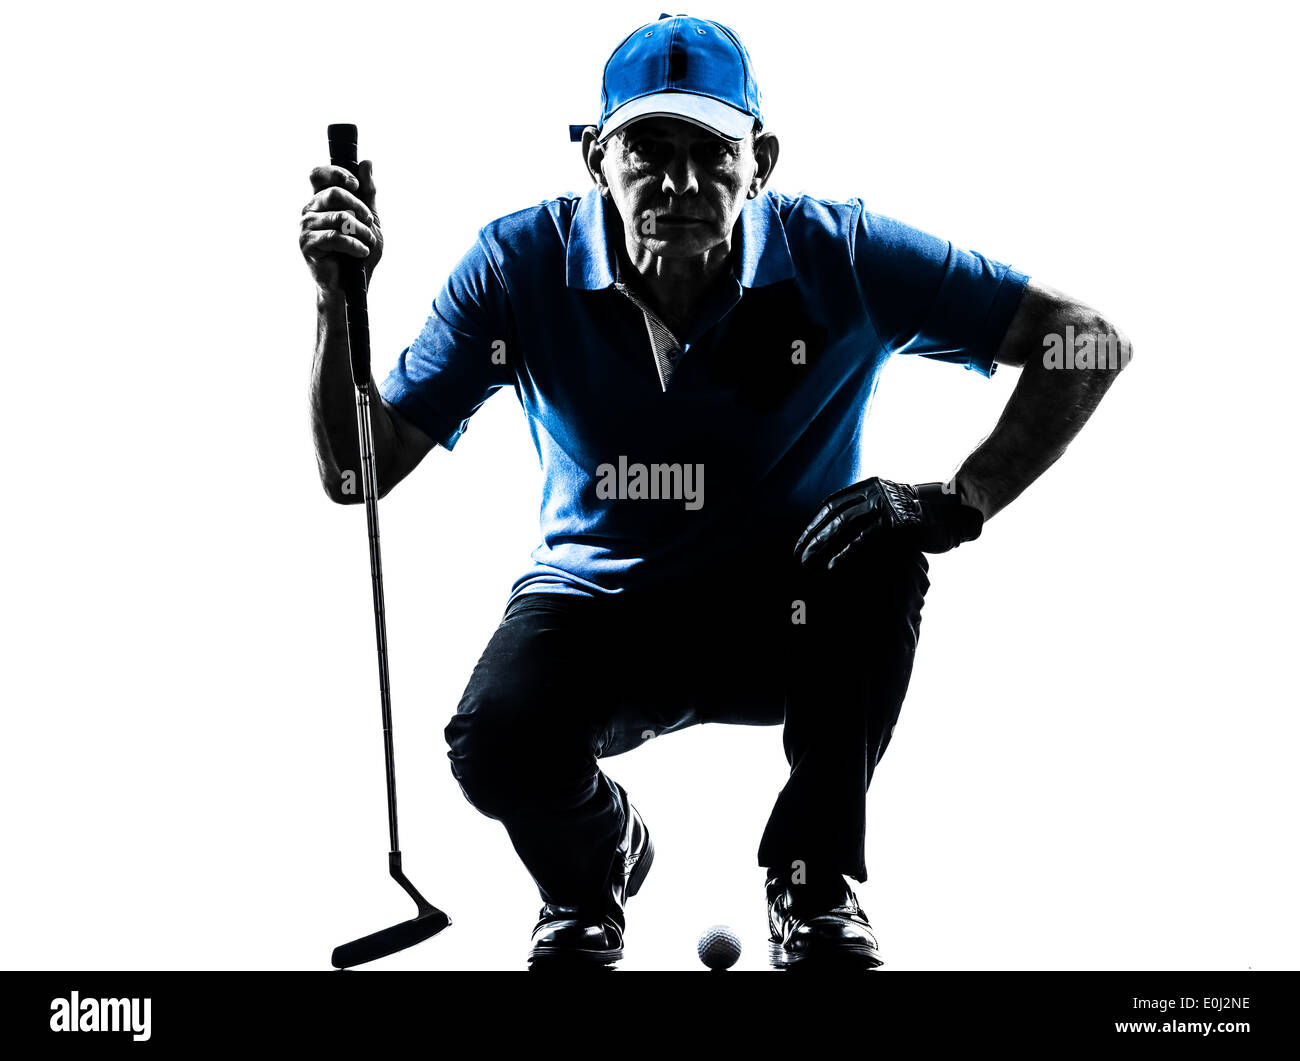 ein Mann Golfer Golfen hockend Silhouette Studio isoliert auf weißem Hintergrund Stockfoto